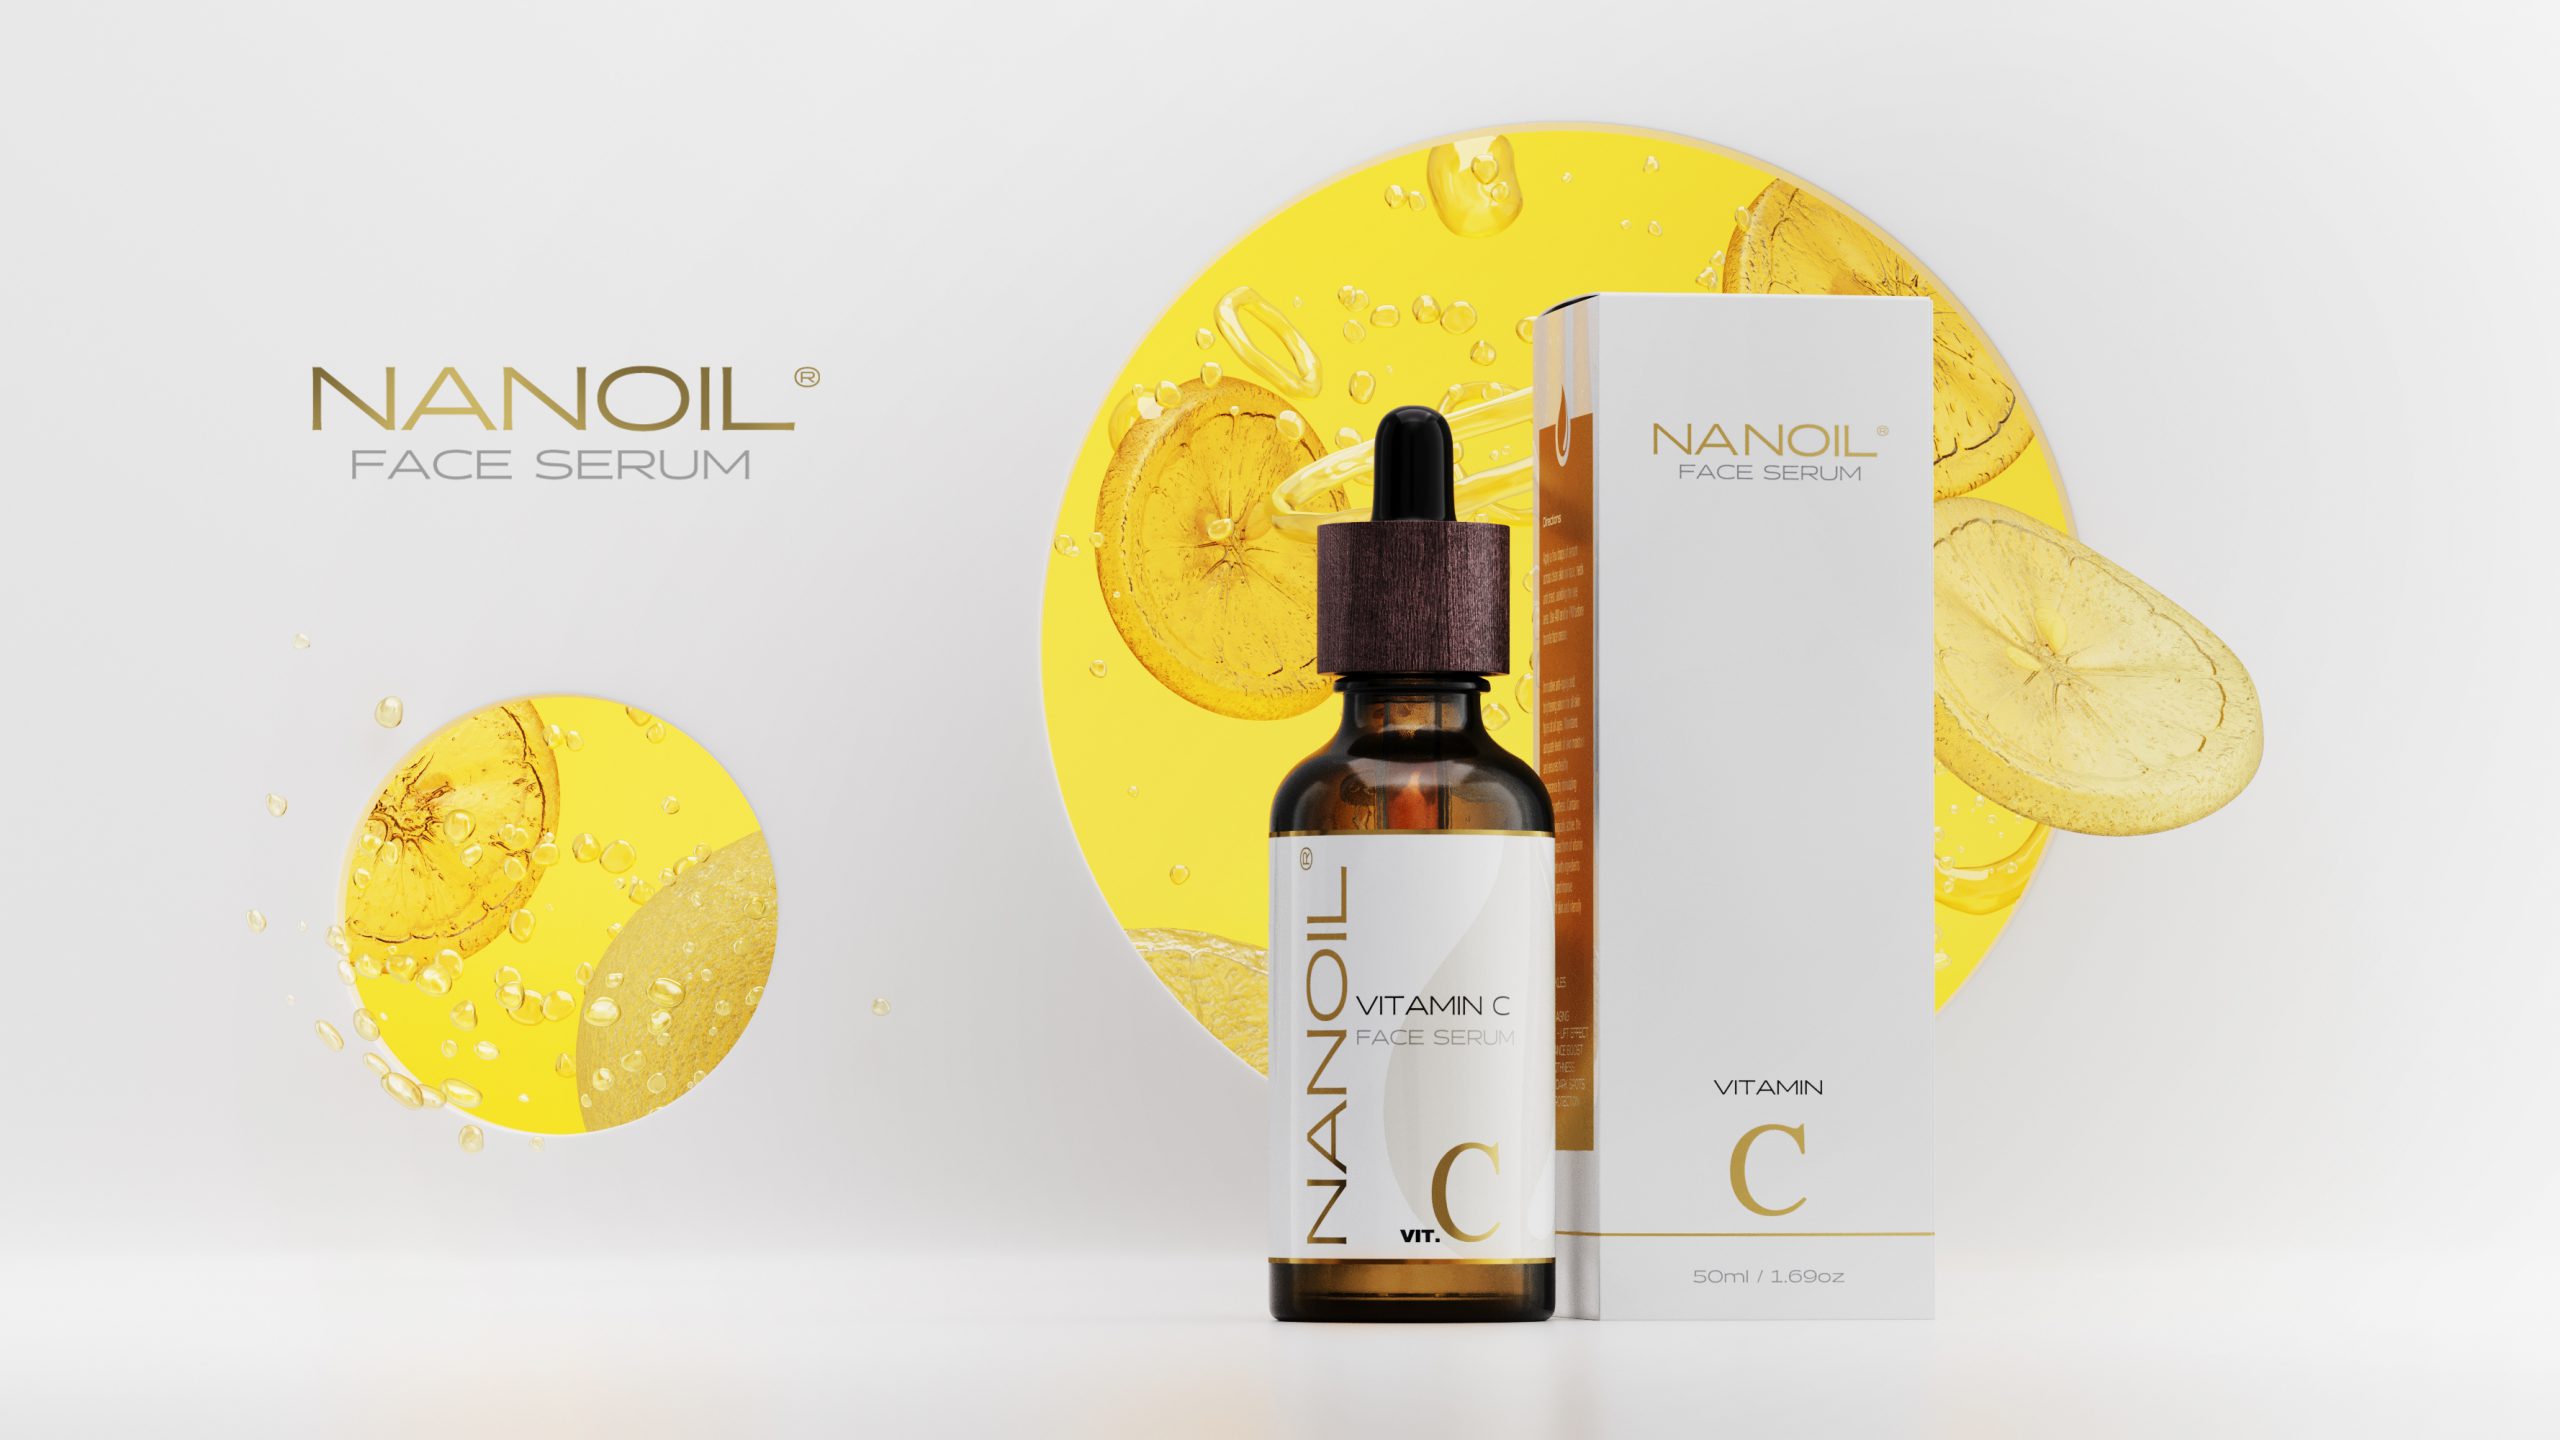 Le Nanoil Vit. C Face Serum : un élixir vitaminé pour une peau sublimée!